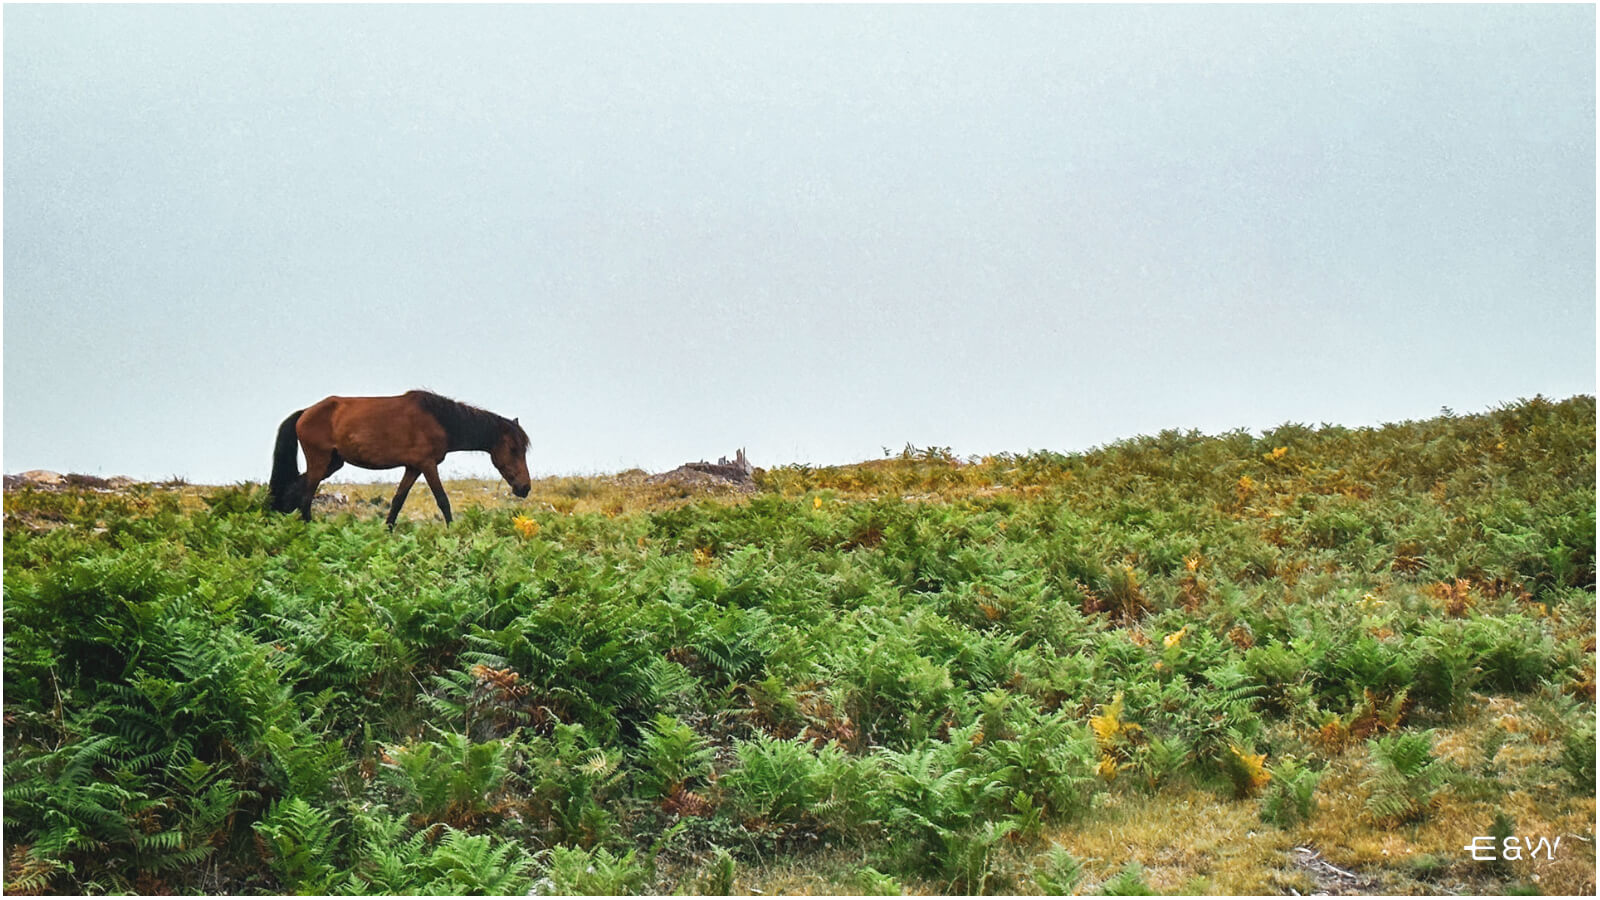 10 Mejores cosas que hacer en Baiona, Galicia, España - 1. Wild Horses Safari on Monte A Groba